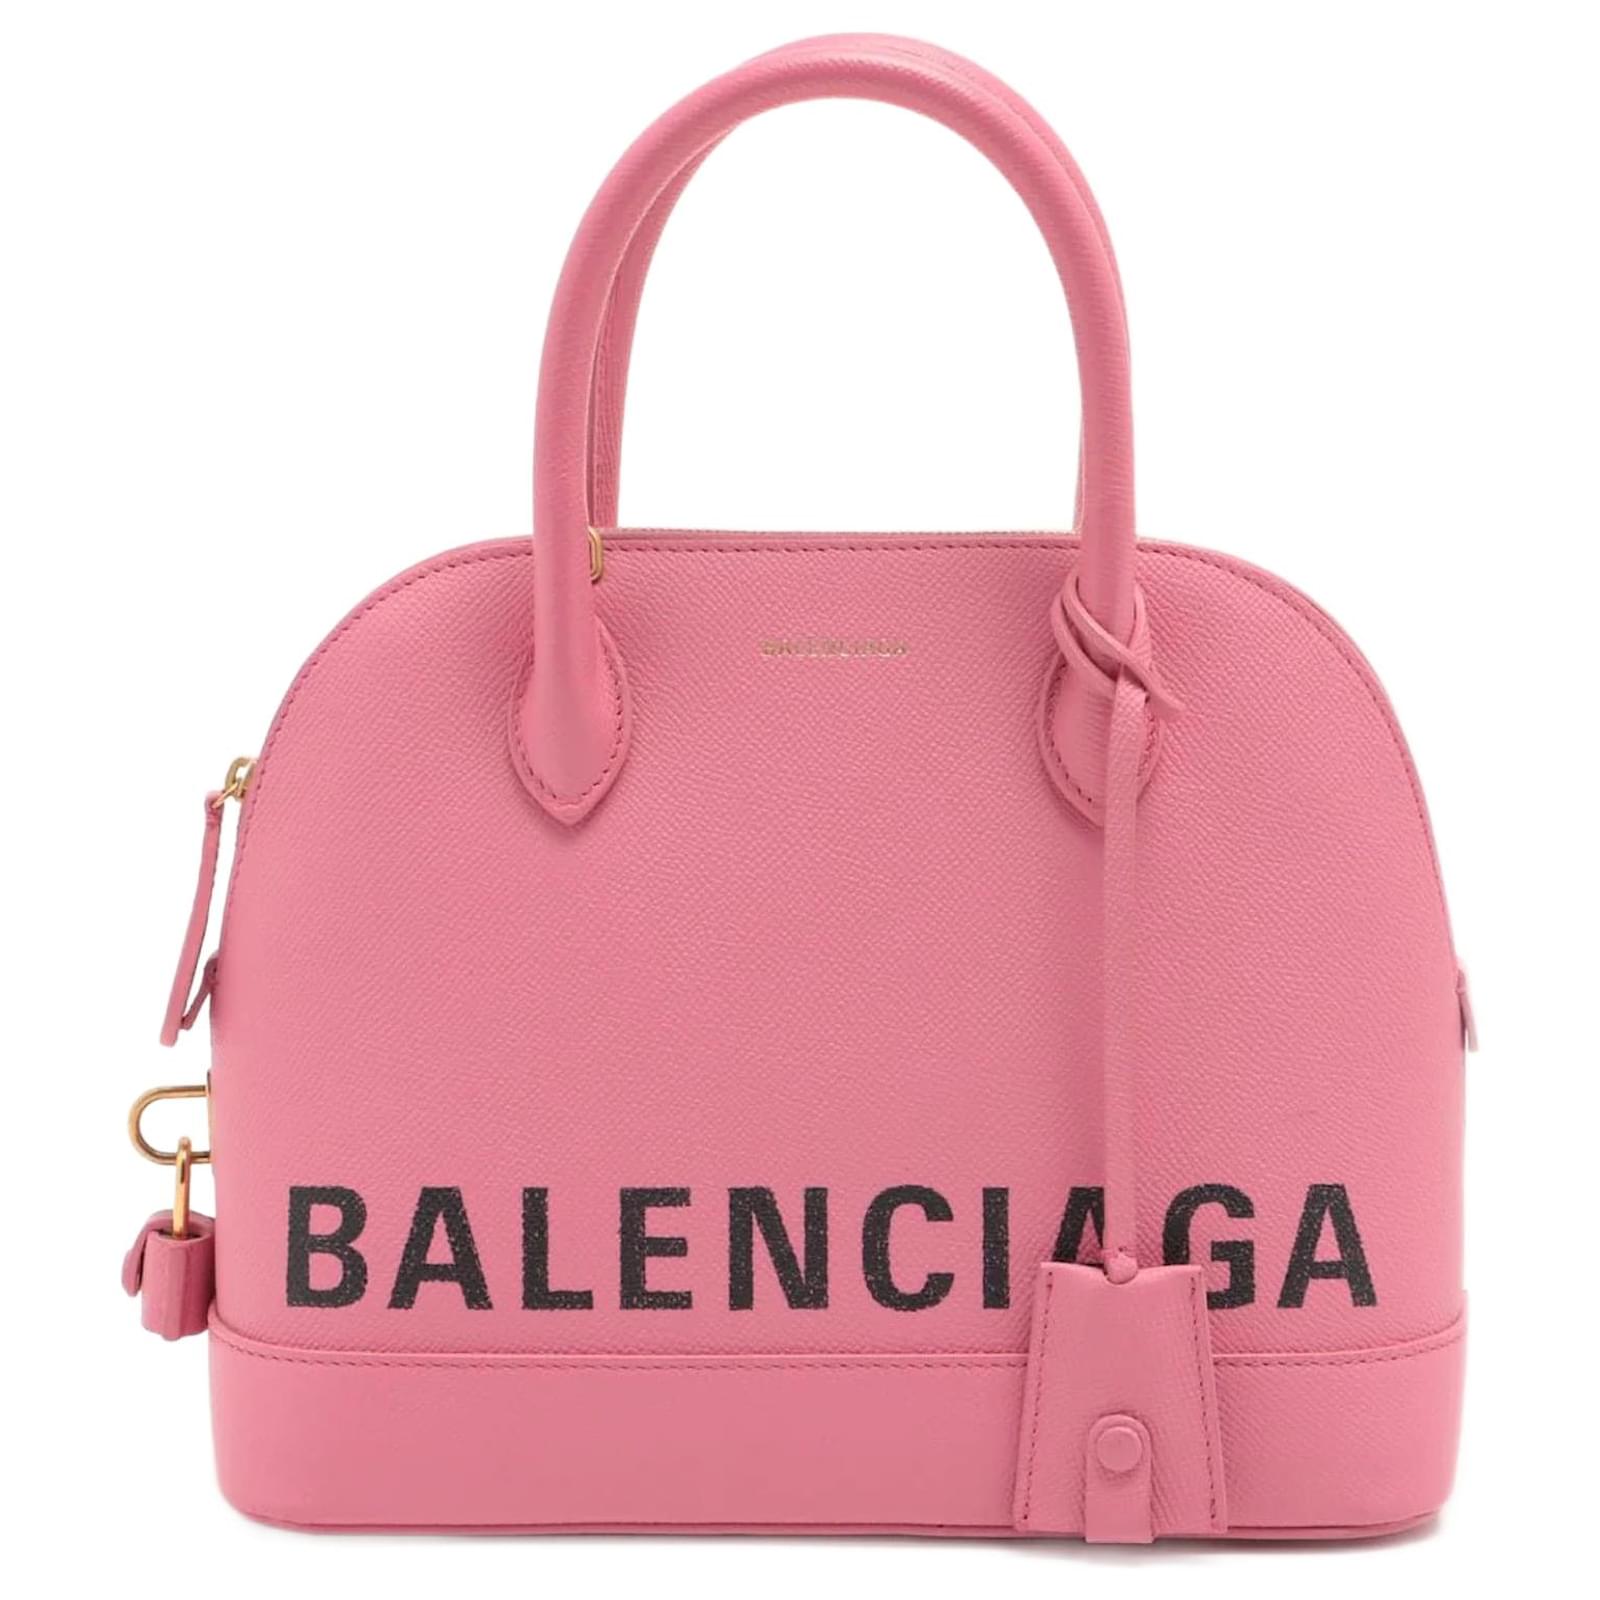 Balenciaga Logo Ville Top Handle Bag